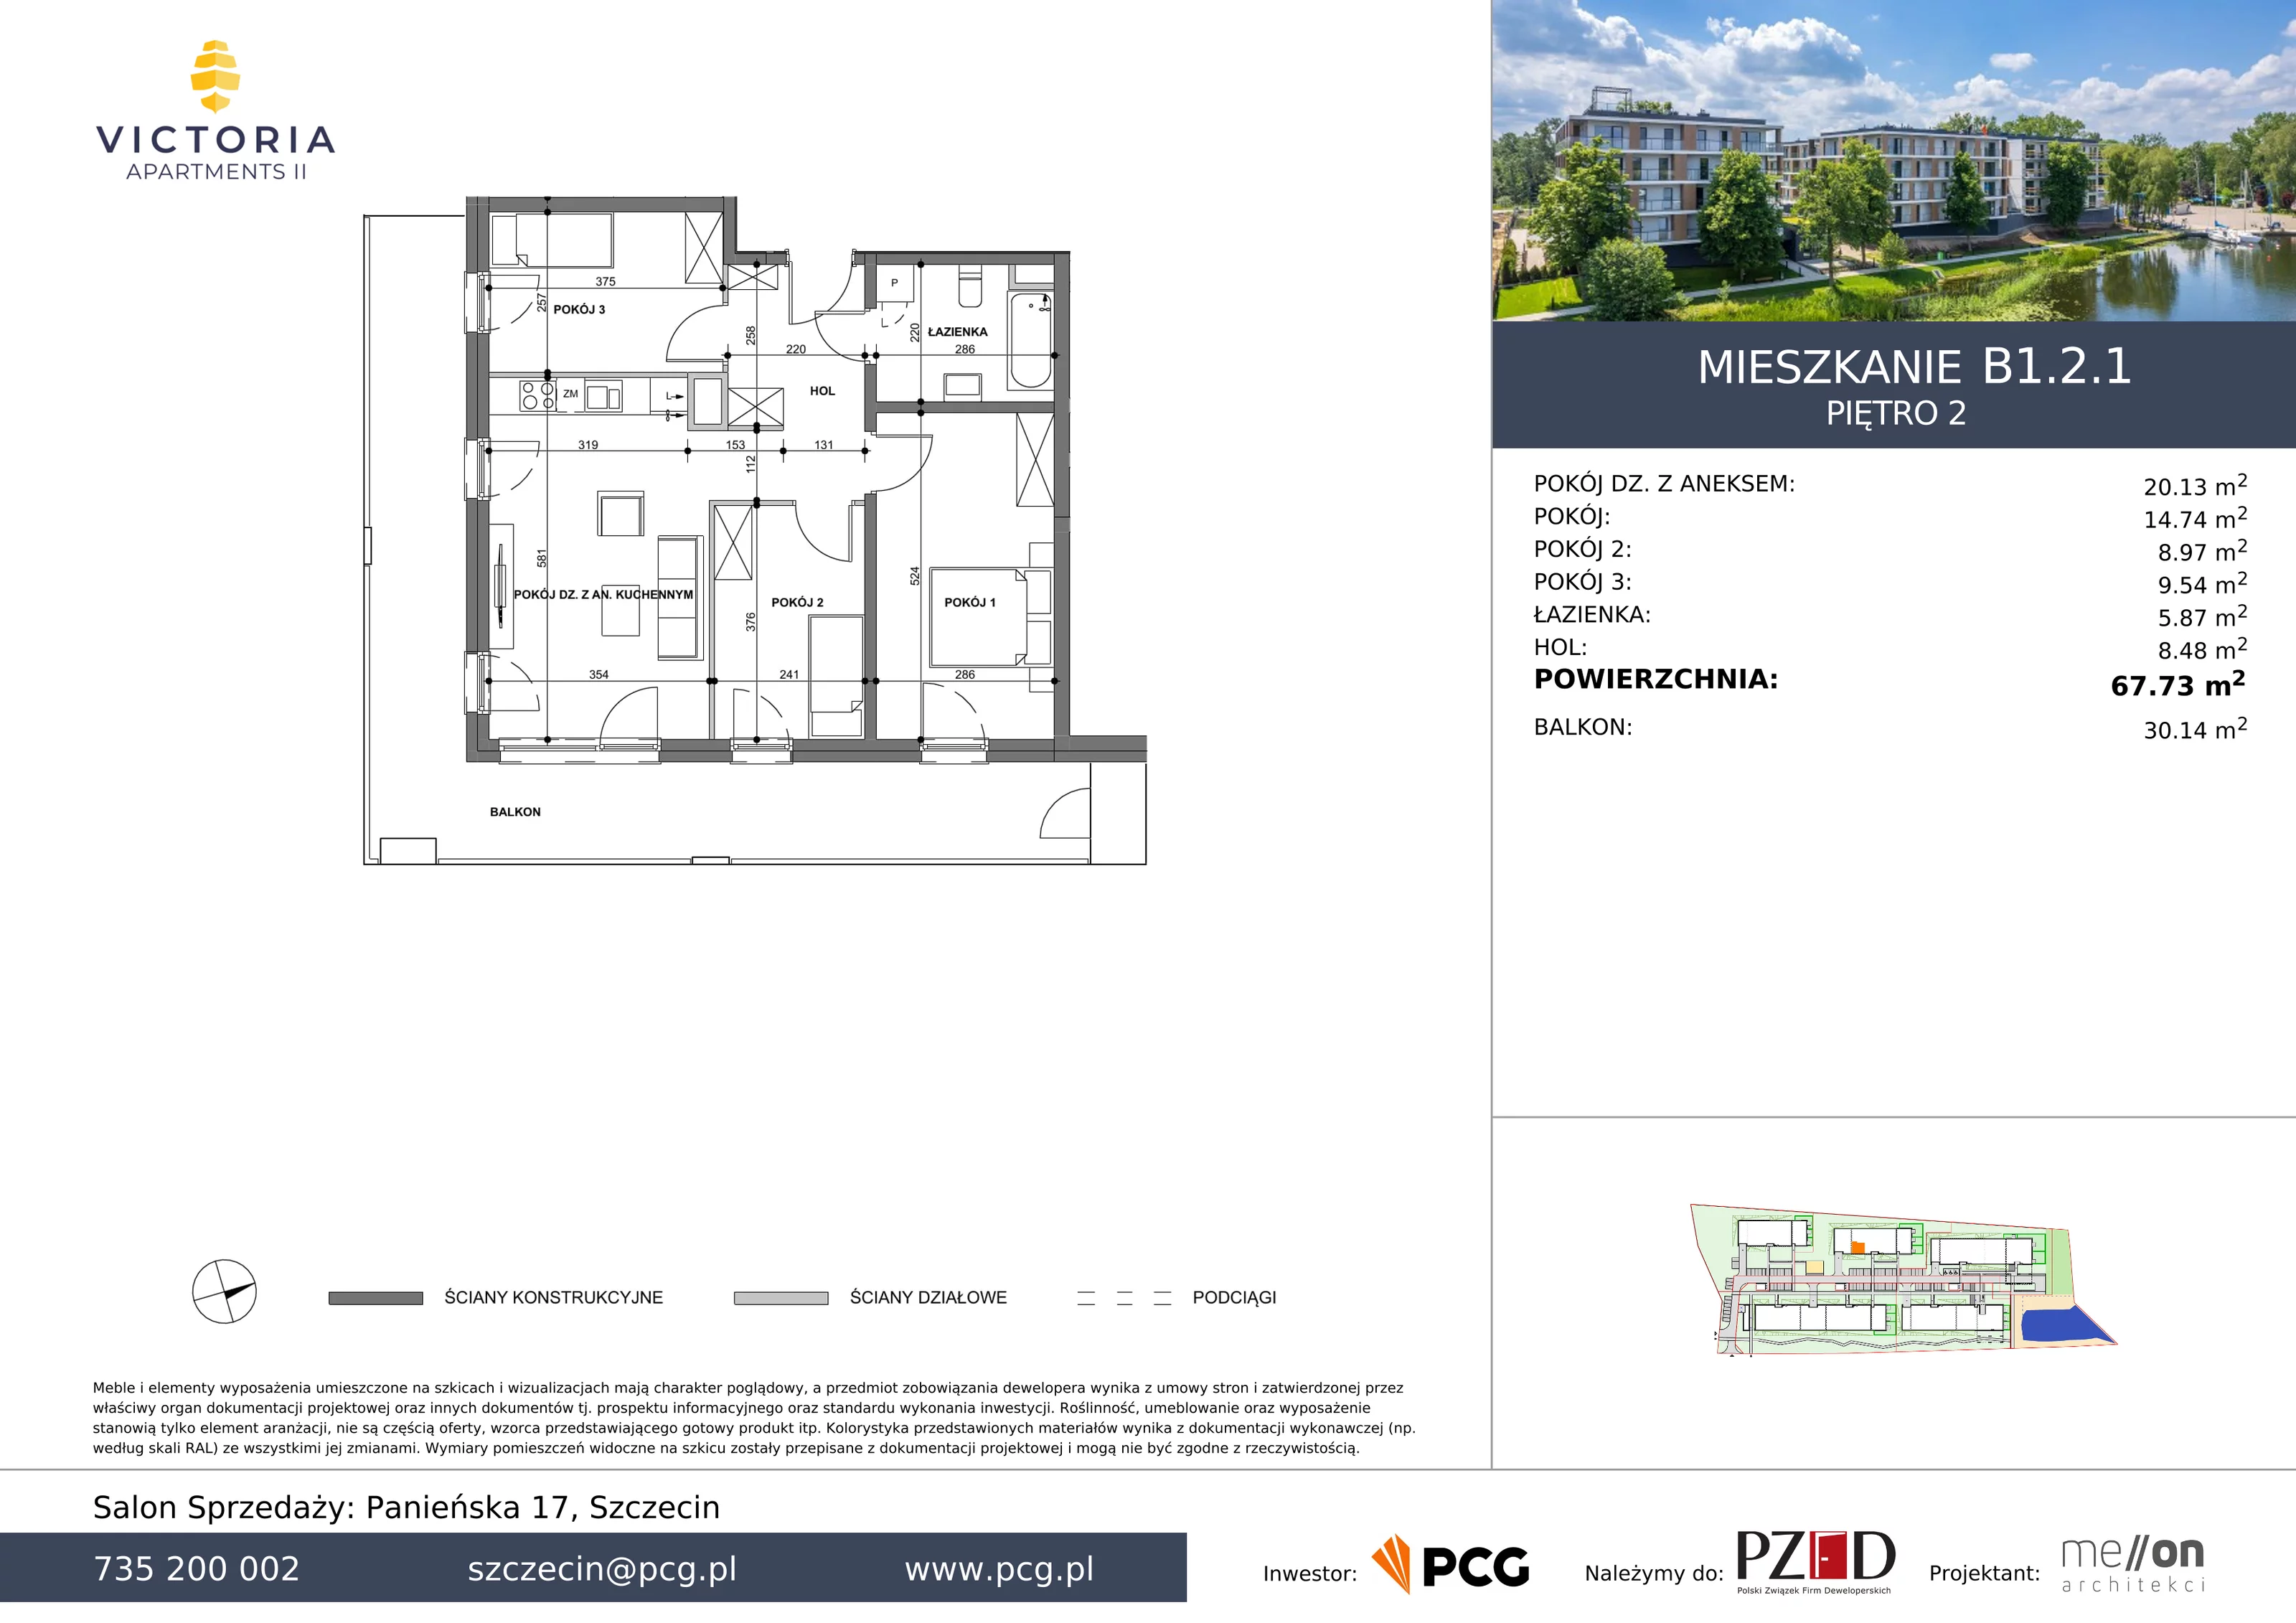 Apartament 67,73 m², piętro 2, oferta nr B1.2.1, Victoria Apartments II, Szczecin, Prawobrzeże, Dąbie, ul. Przestrzenna